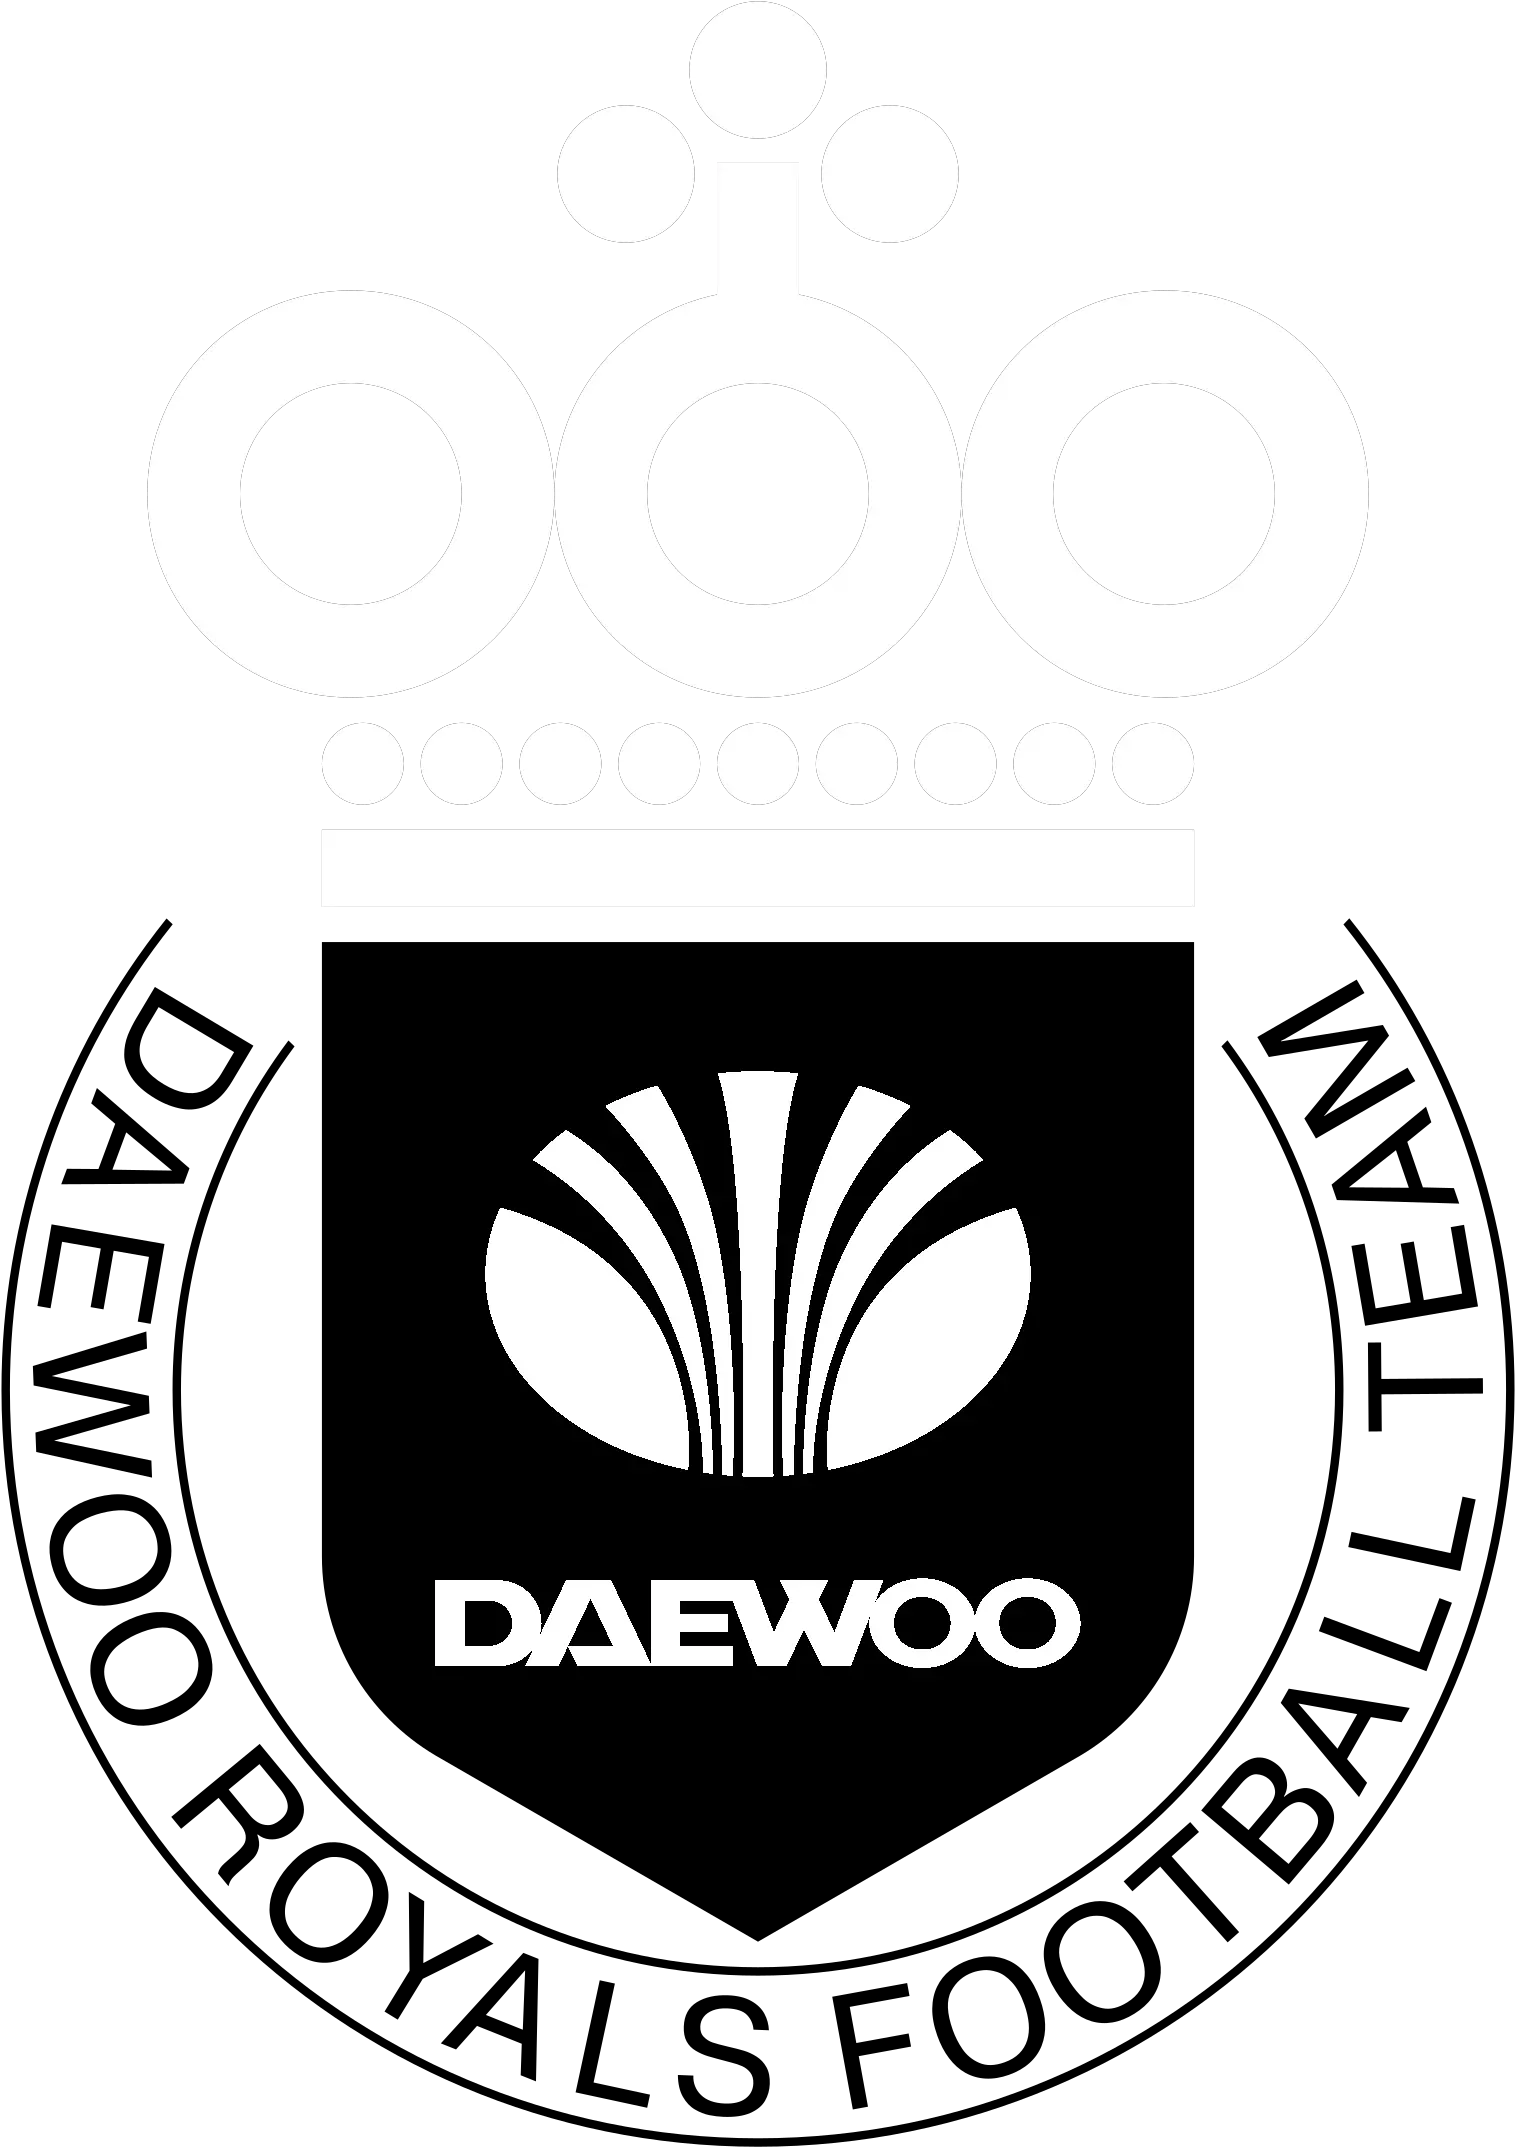 Daewoo Royals Logo Png Transparent Emblem Daewoo Logos